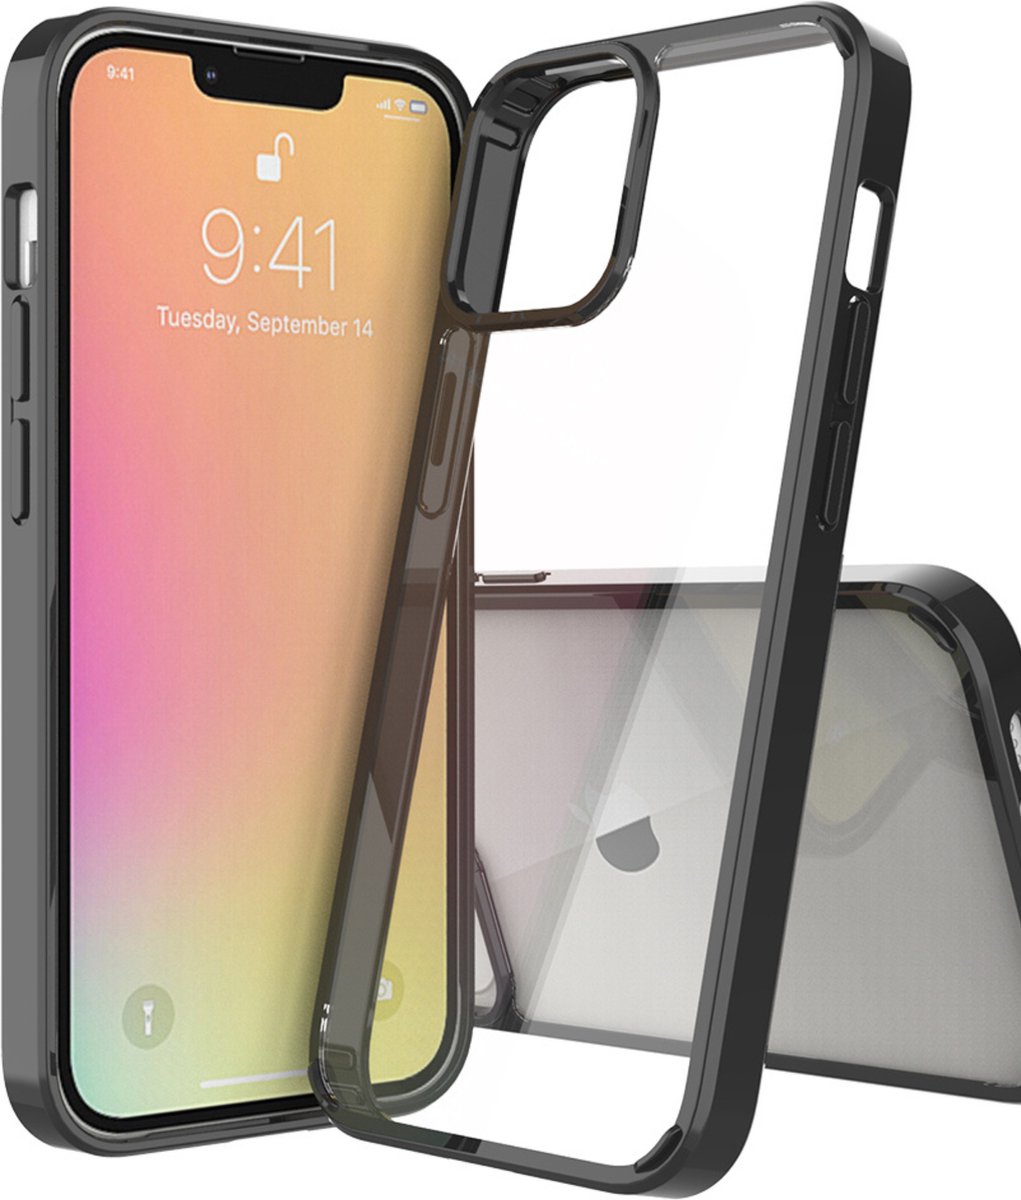 Stargoods iPhone 13 hoesje - iPhone 13 hoesje transparant zwart - iPhone 13 hoesje transparant - iPhone 13 case - Gratis screenprotector